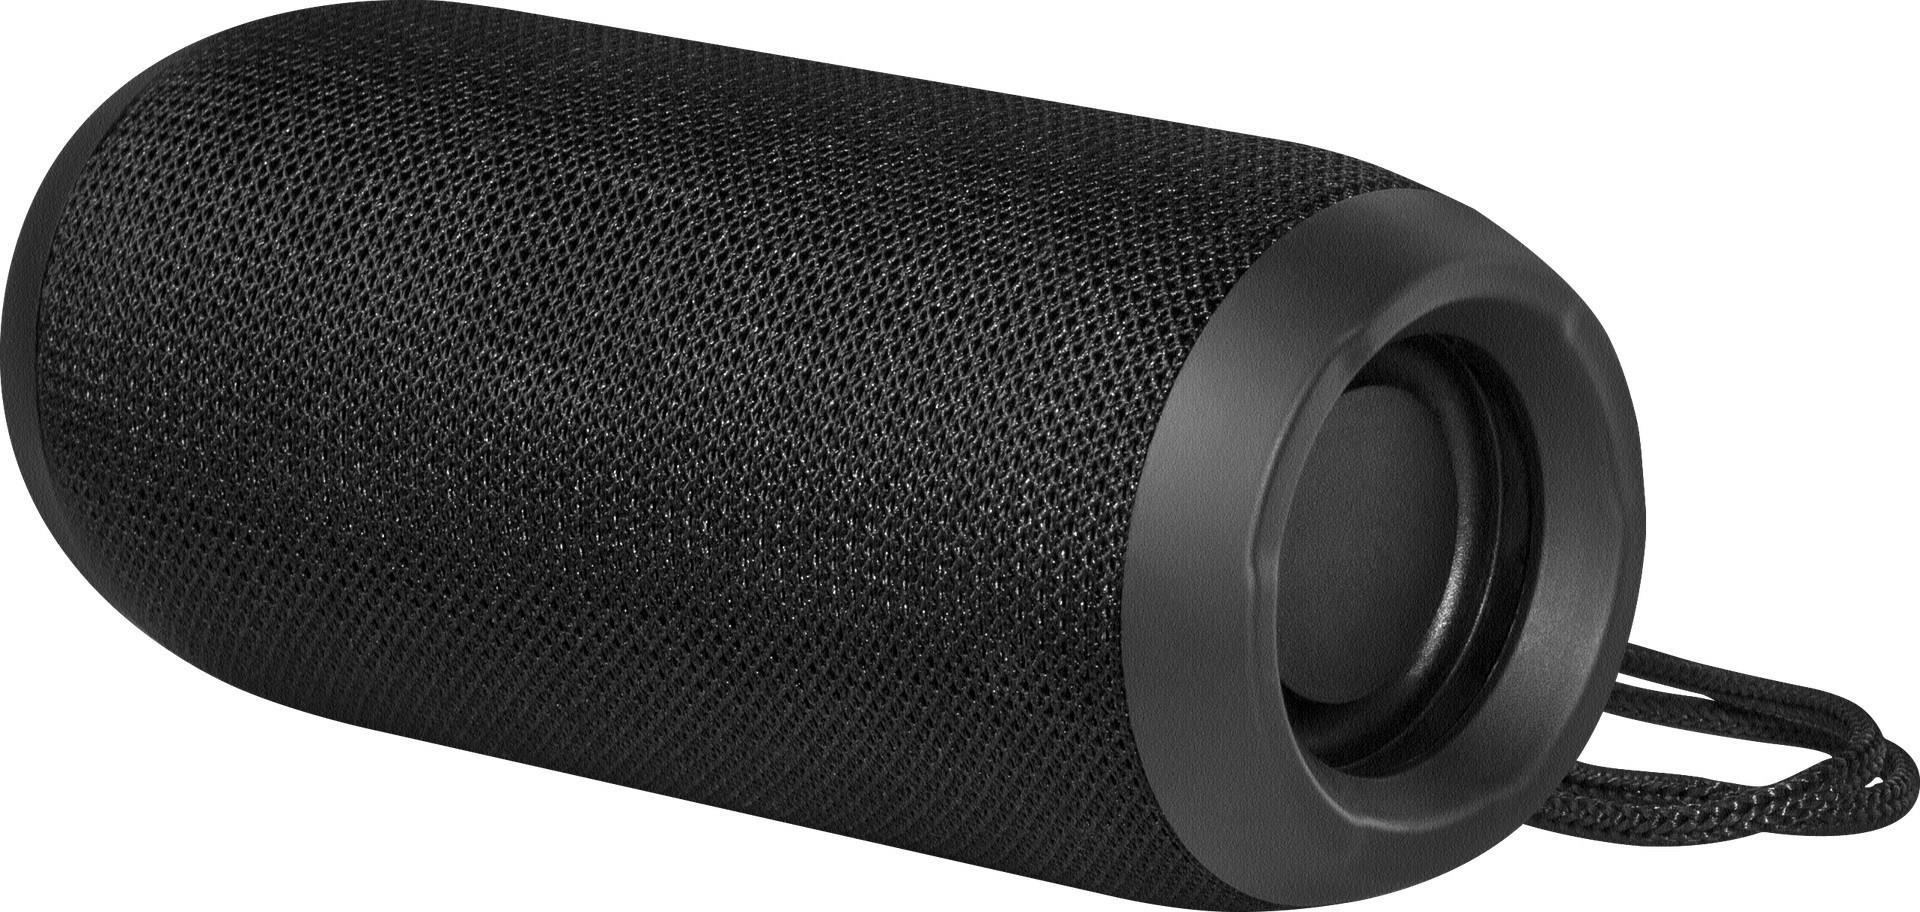 Defender S700 Tragbarer Stereo-Lautsprecher Schwarz 10 W (65701)